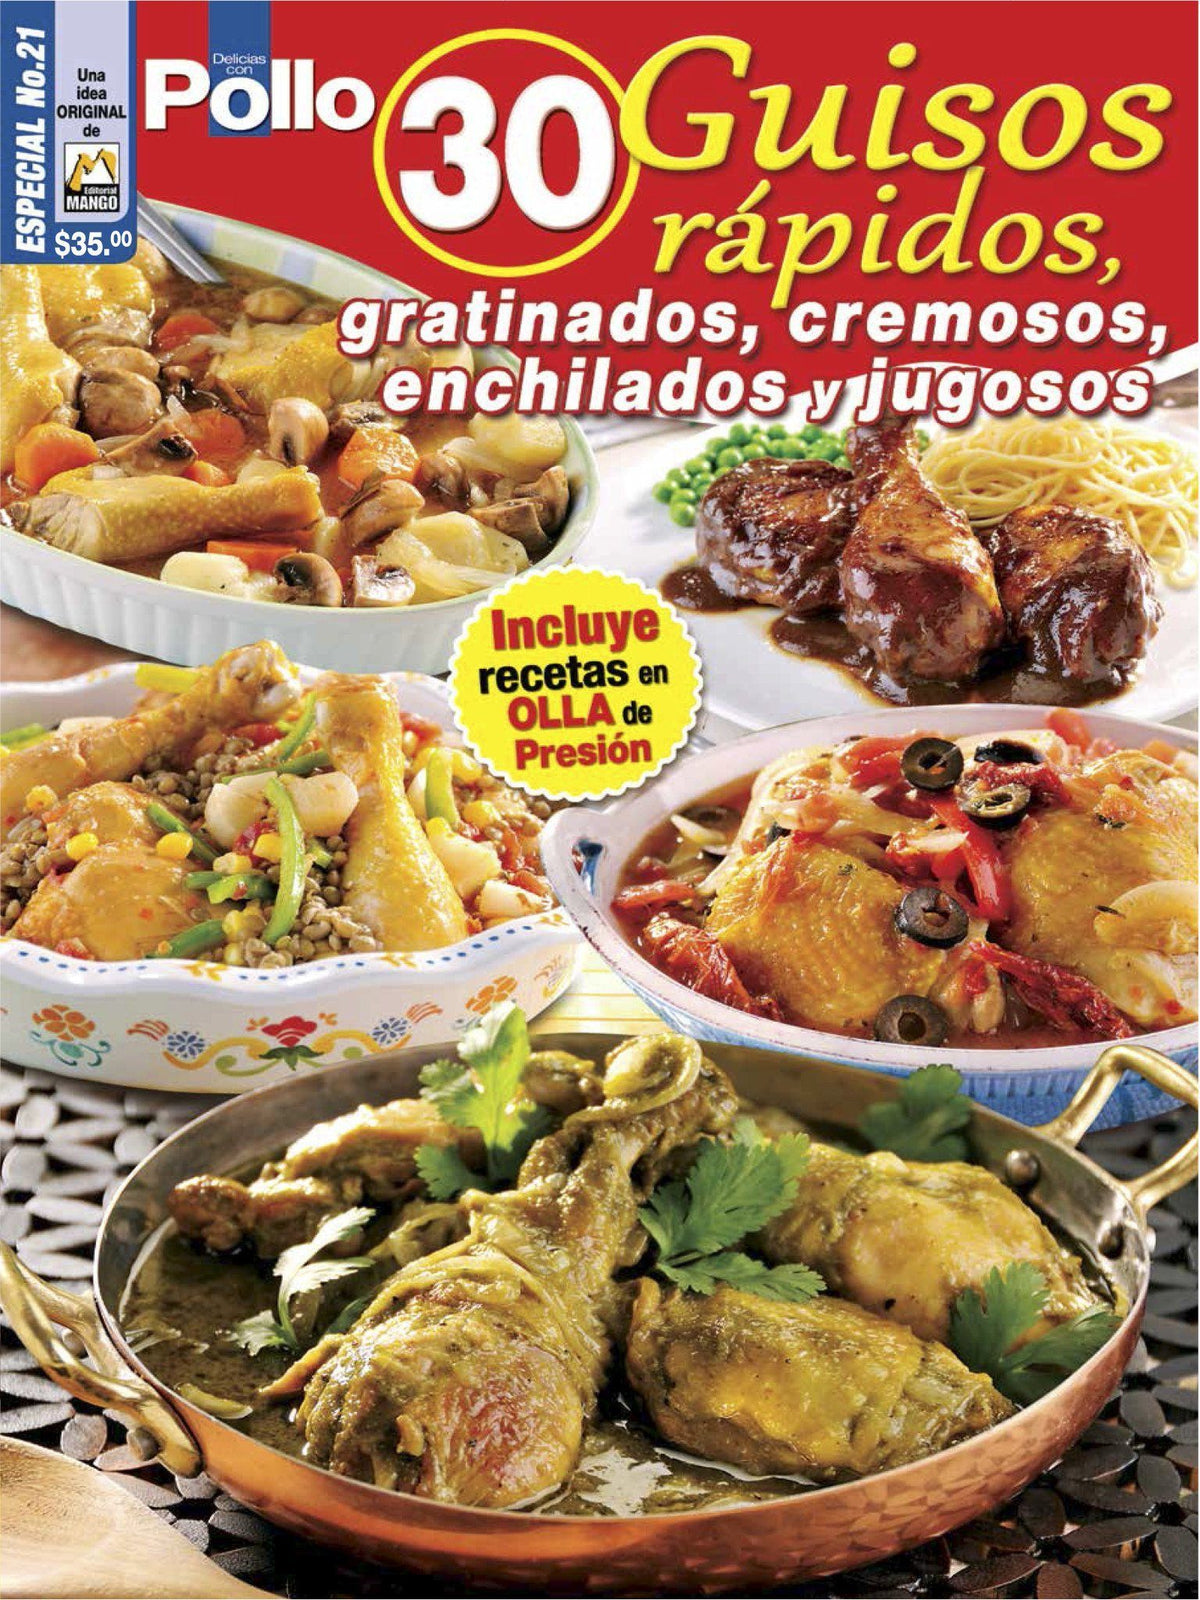 Delicias con Pollo Especial 21 - 30 Guisos rapidos - Formato Digital - ToukanMango